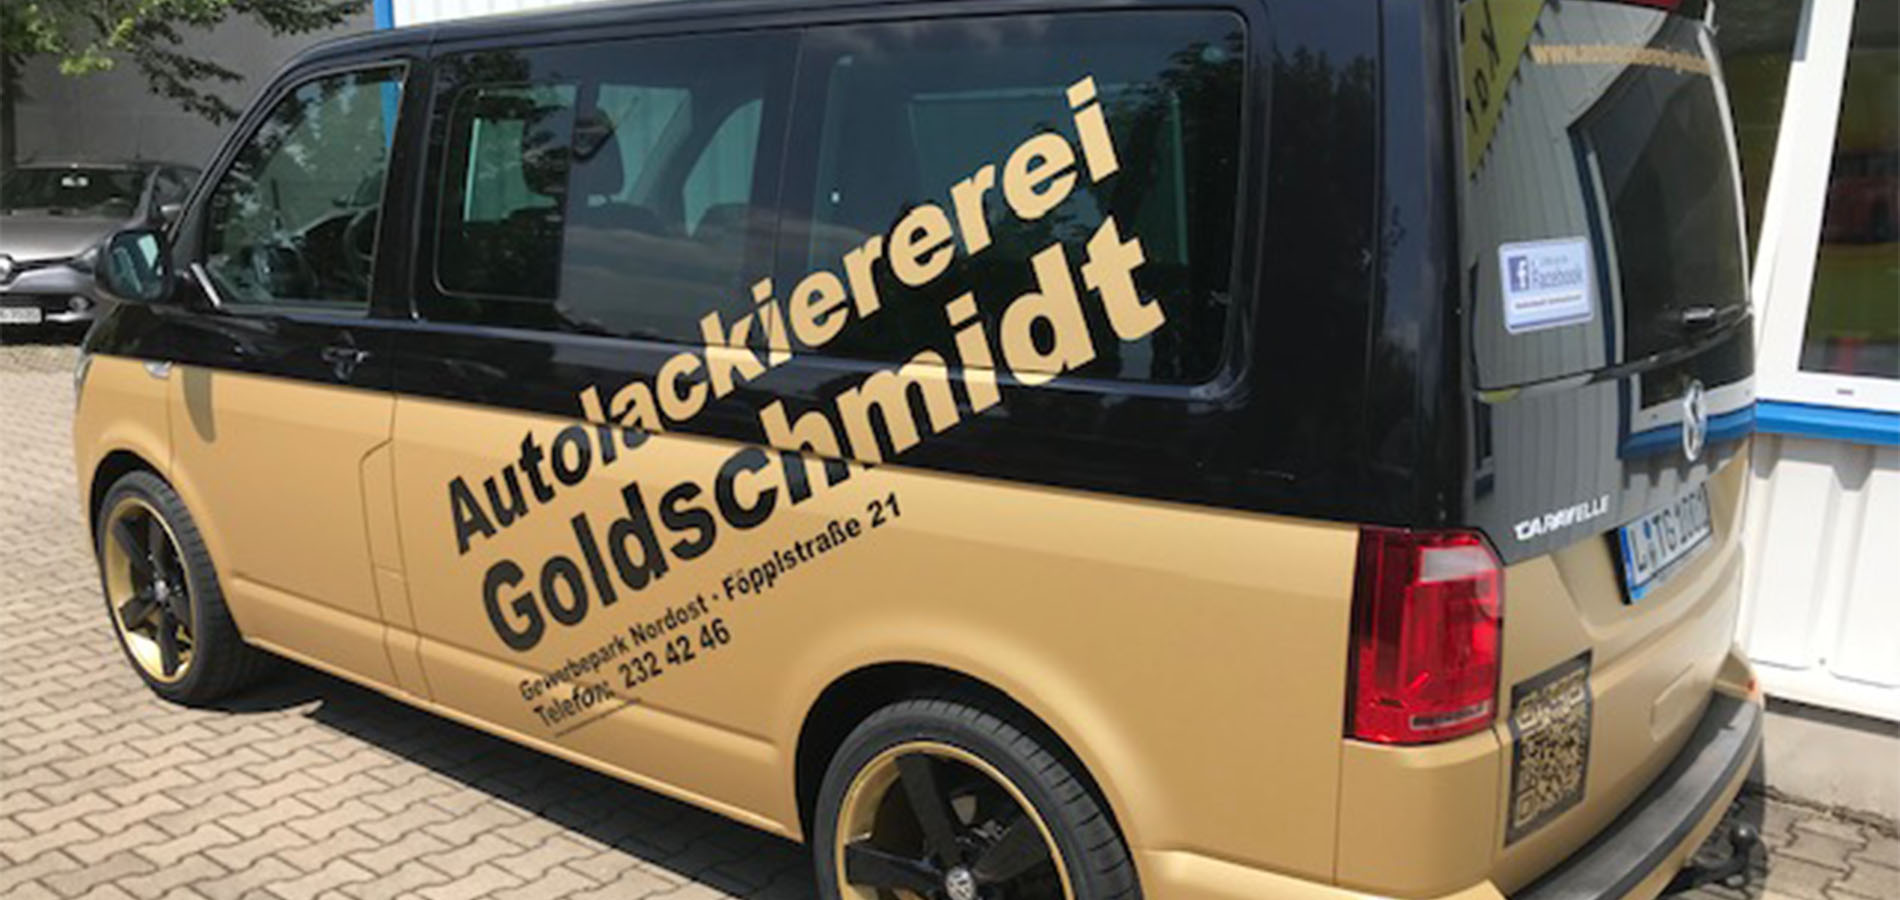 (c) Autolackiererei-goldschmidt.de